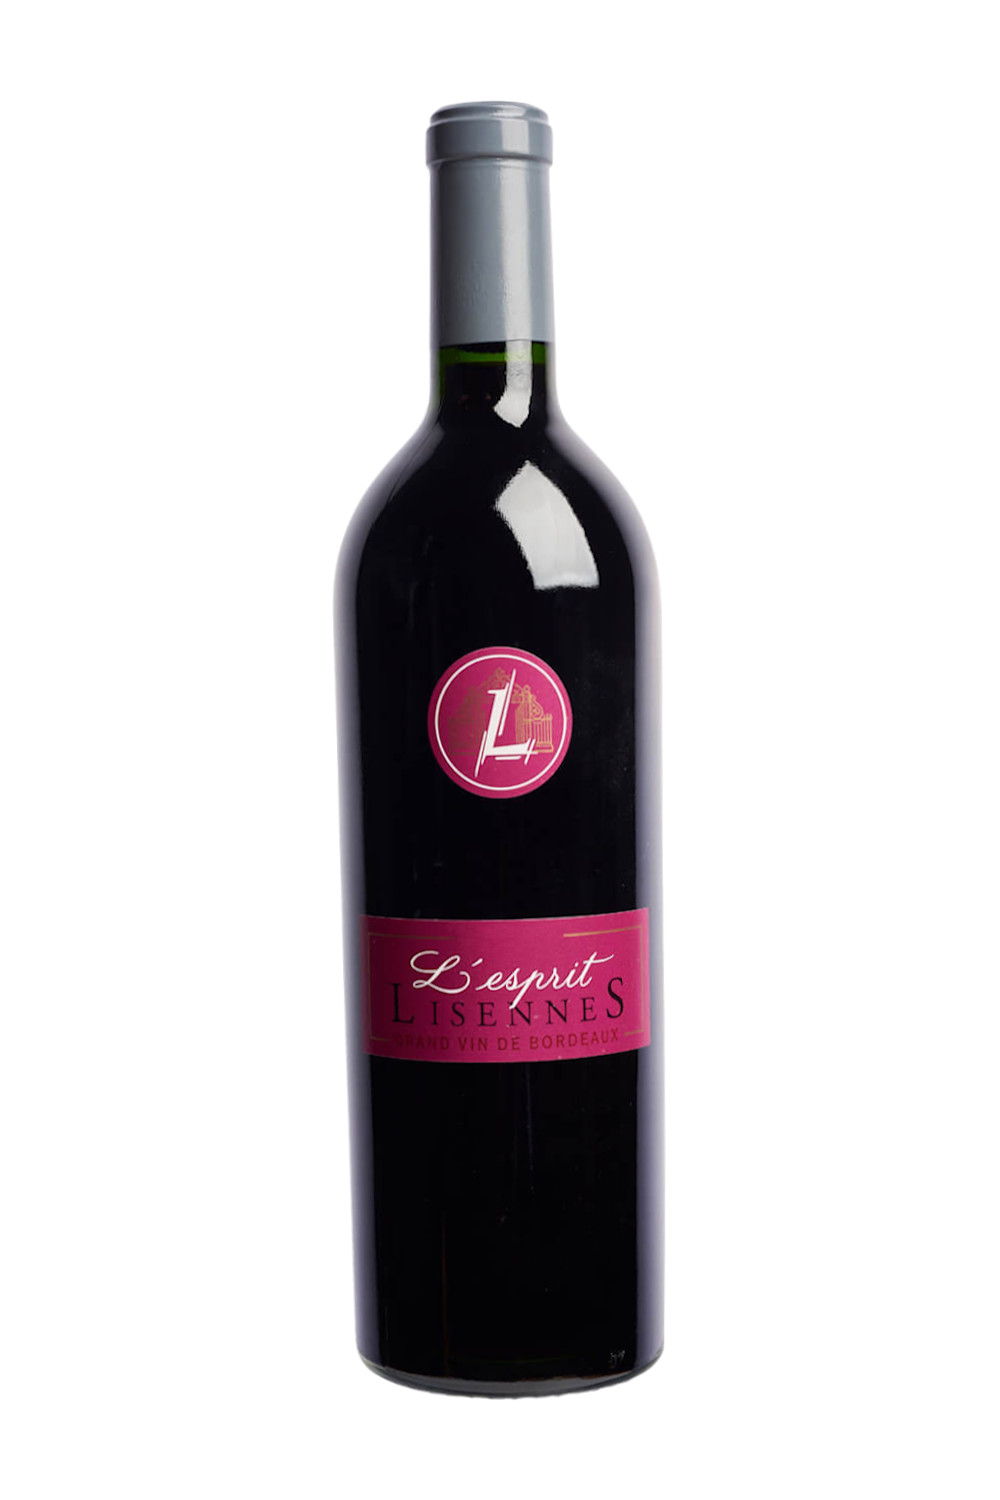  LÂ´esprit Lisennes, Grand vin de Bordeaux